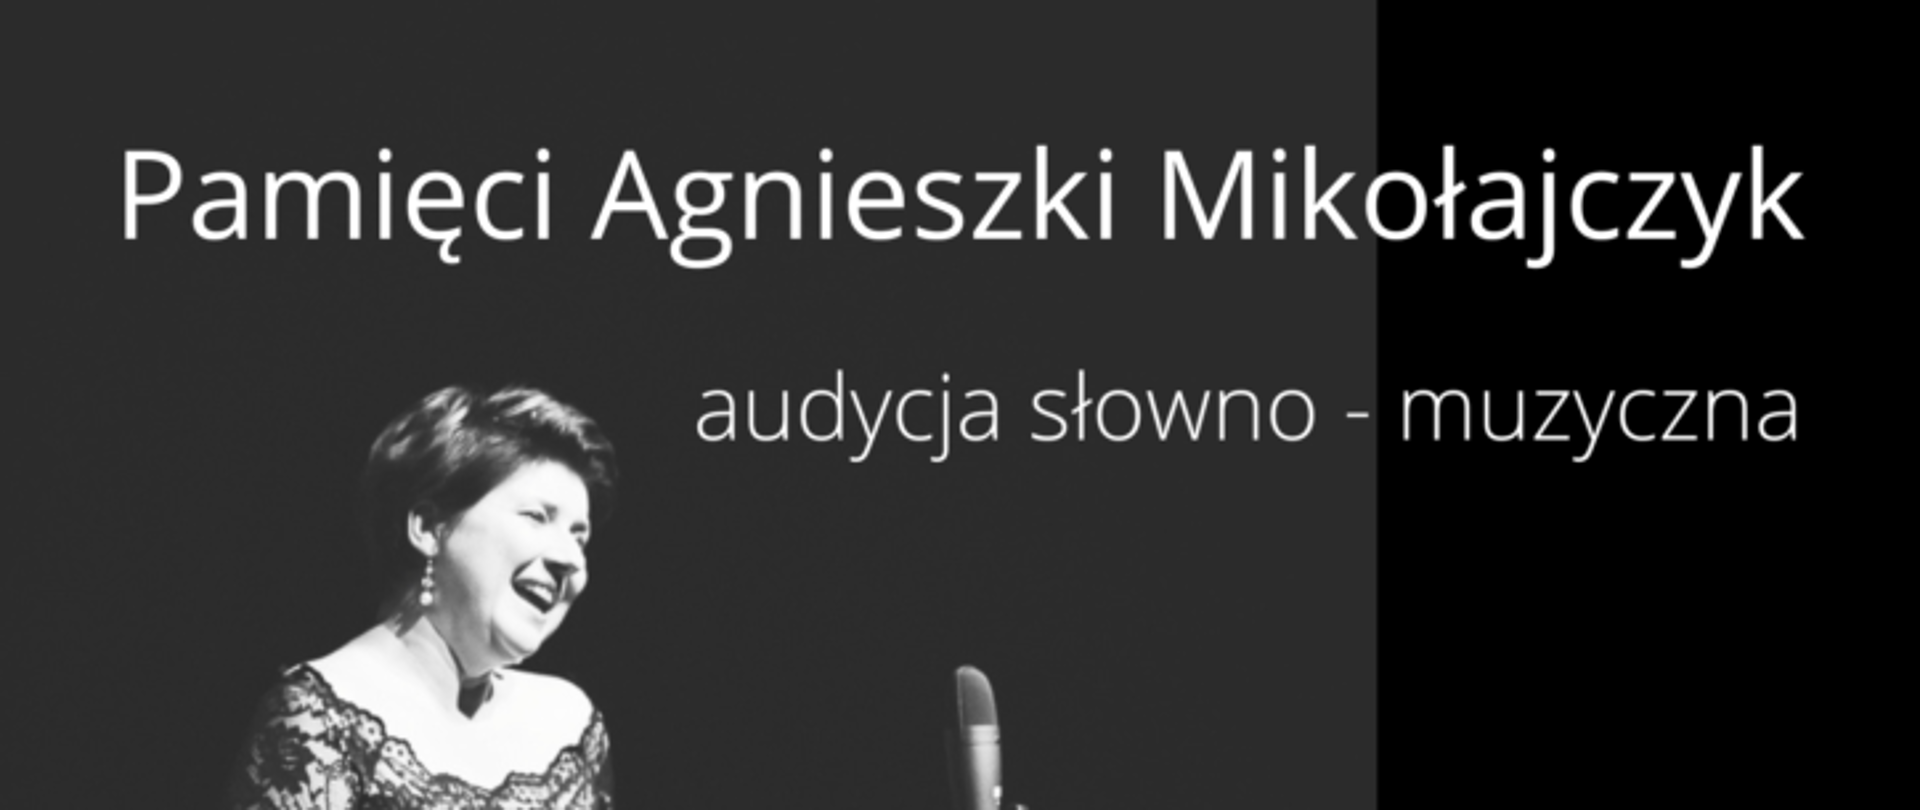 czarne tło, postać kobiet w długiej sukni Pamięci Agnieszki Mikołajczyk, audycja słowno-muzyczna, 9 listopada 2022 r. godz. 17.30, sala koncertowa